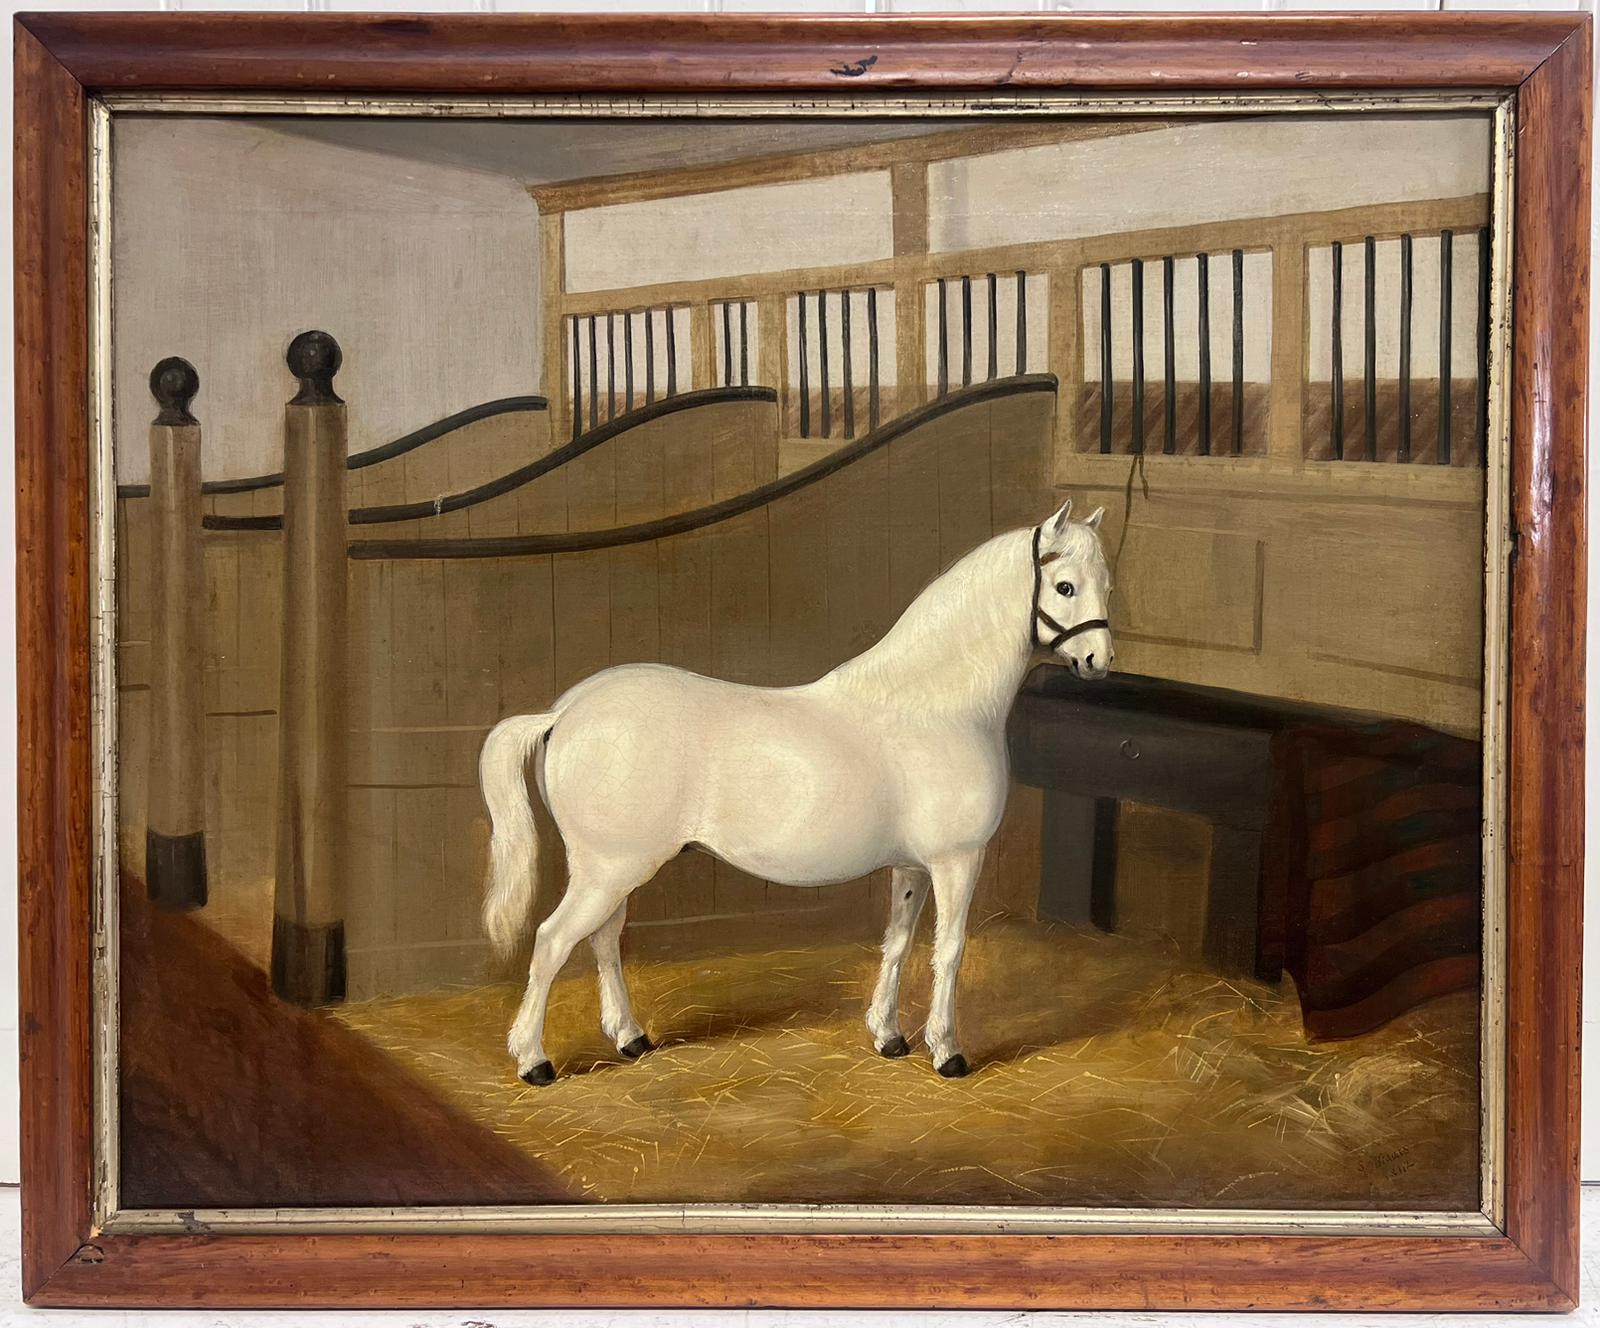 1840 Antique peinture à l'huile anglaise Cheval blanc dans l'intérieur d'une écurie signée et datée - Painting de English 1840's